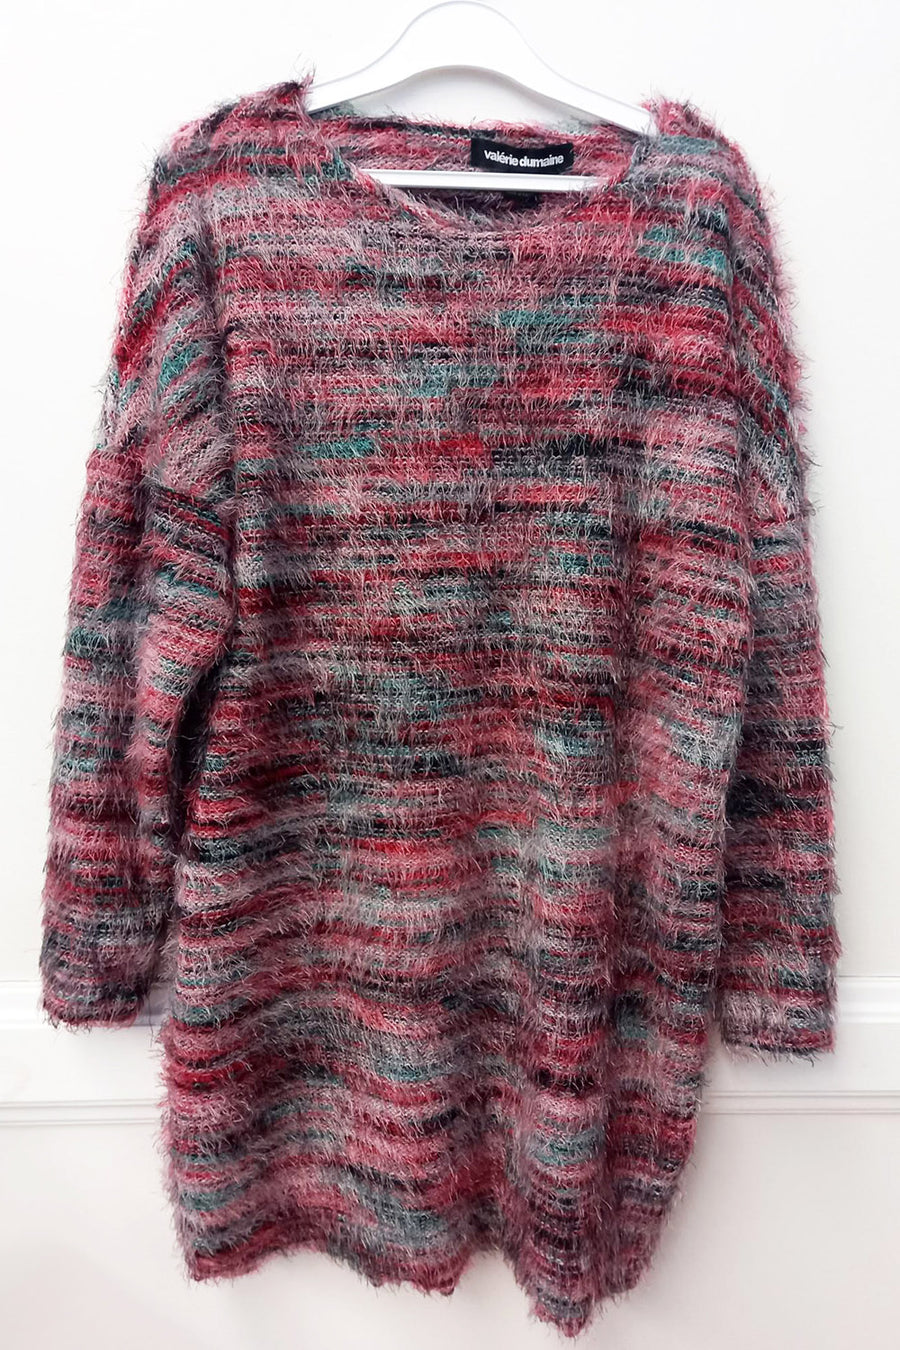 Sample | Zuma Sweater Dress | S